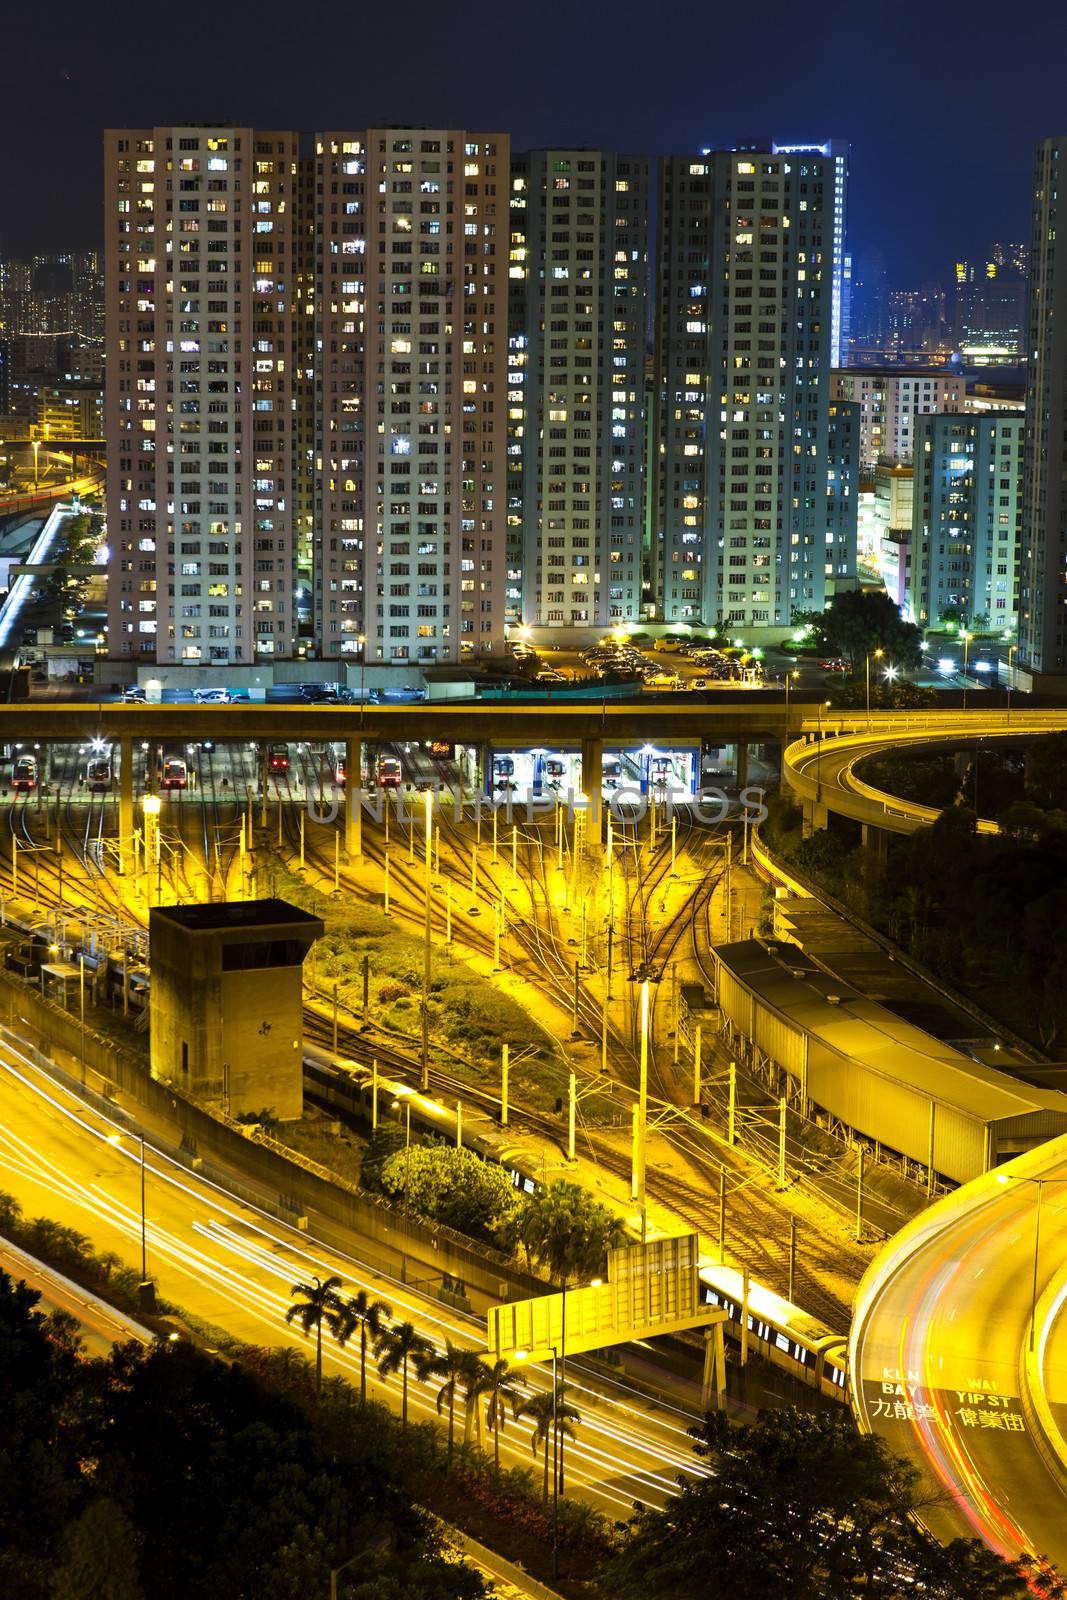 Hong Kong busy downtown at night by kawing921